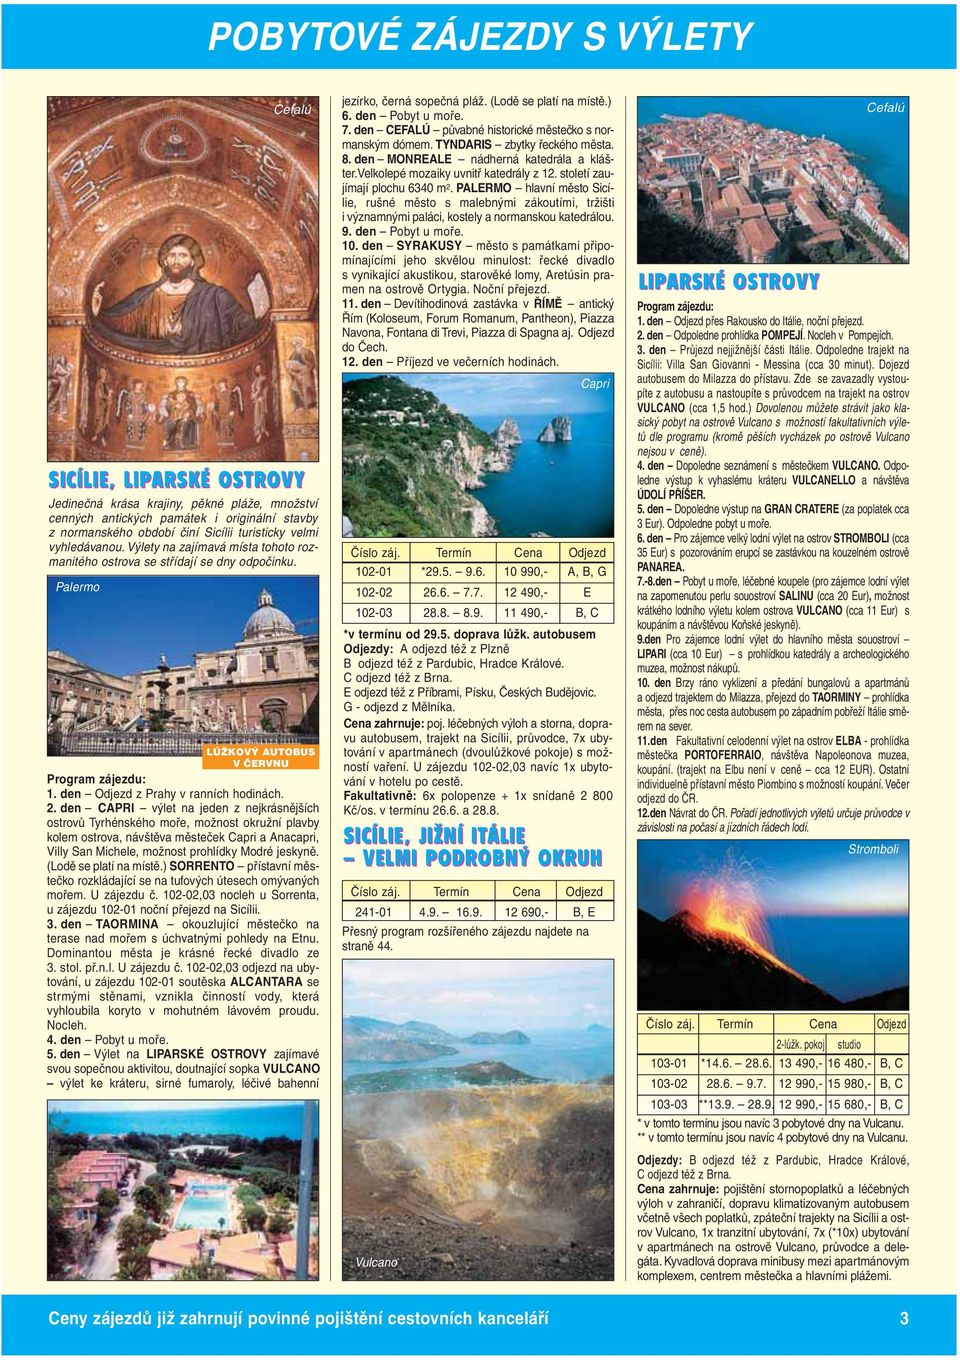 den CAPRI výlet na jeden z nejkrásnějších ostrovů Tyrhénského moře, možnost okružní plavby kolem ostrova, návštěva městeček Capri a Anacapri, Villy San Michele, možnost prohlídky Modré jeskyně.